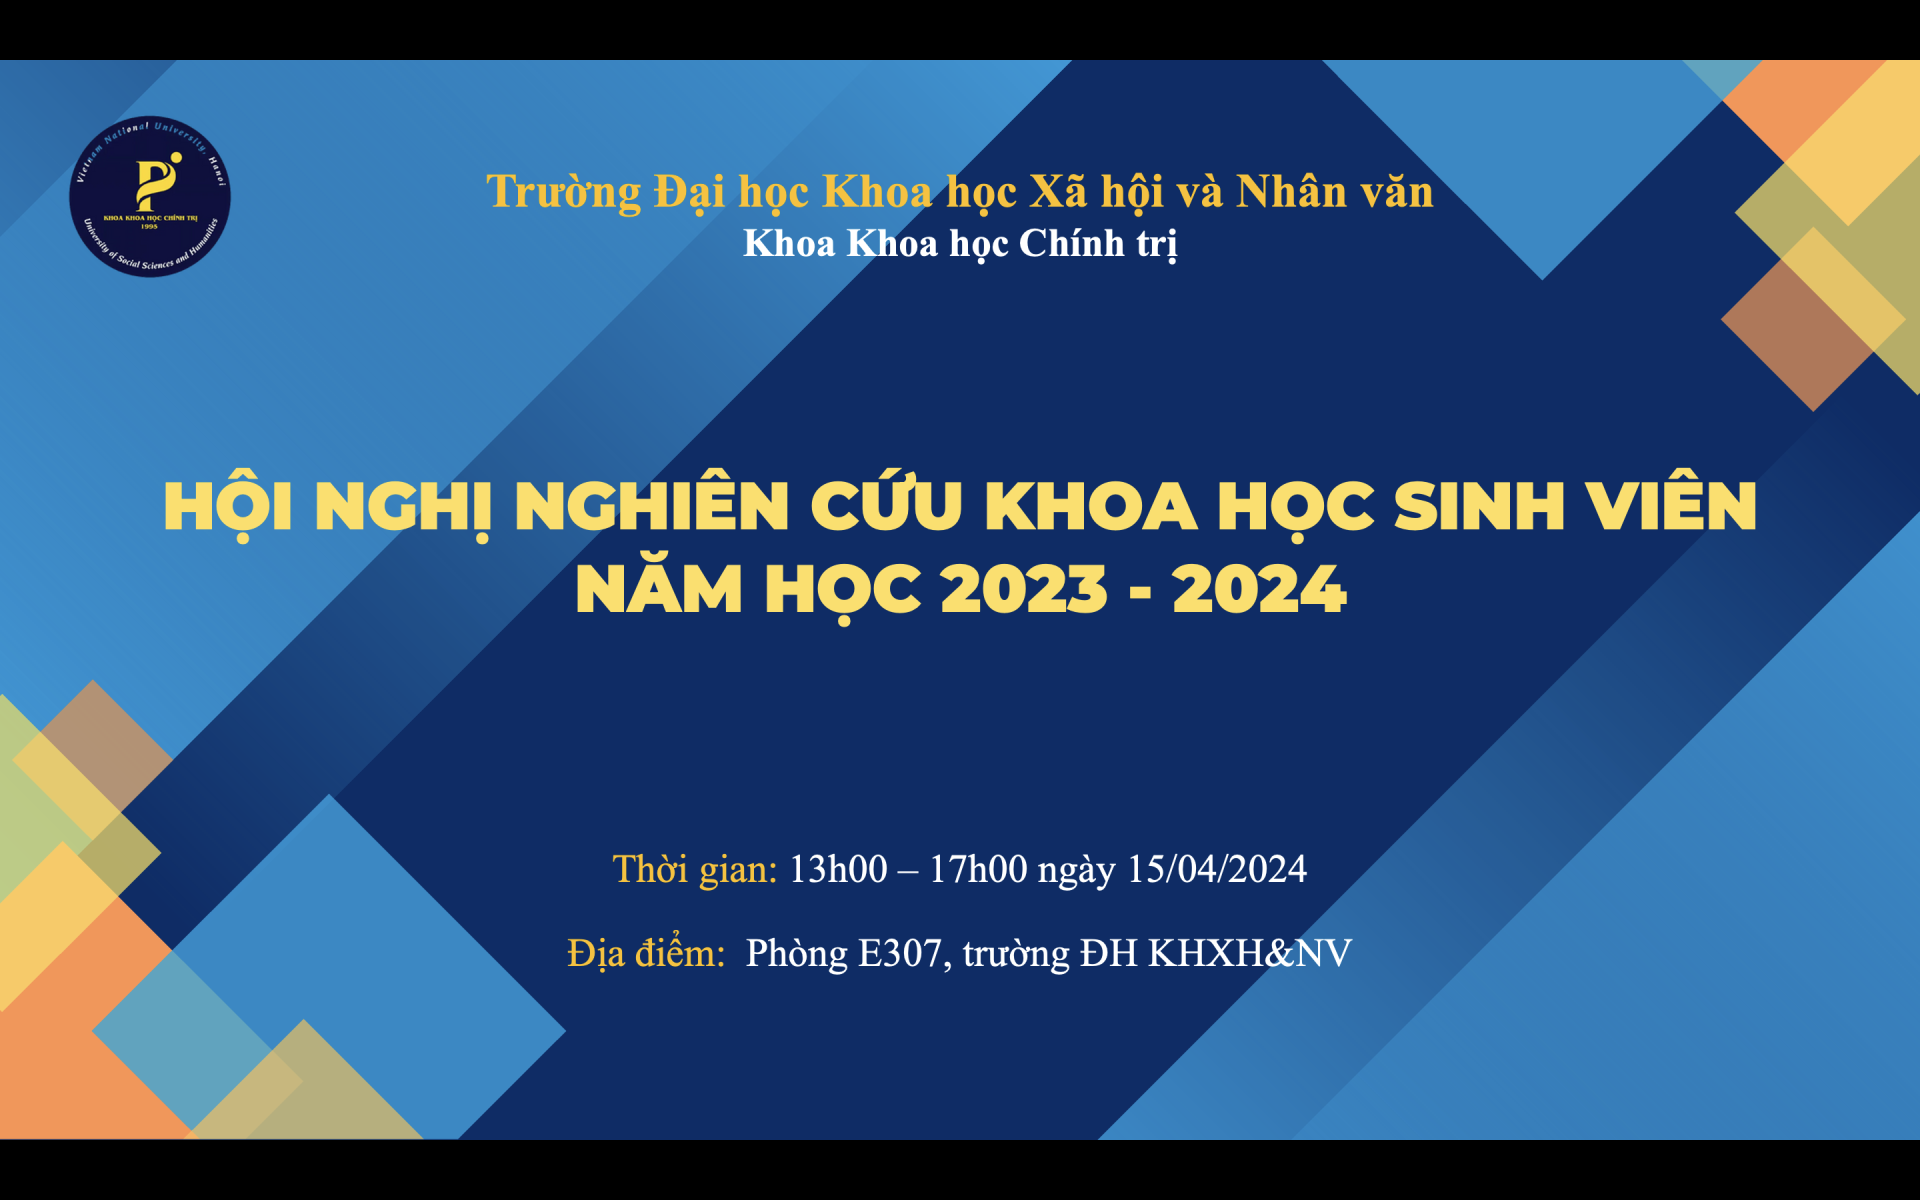 Thông báo tổ chức Hội nghị nghiên cứu khoa học sinh viên năm học 2023-2024